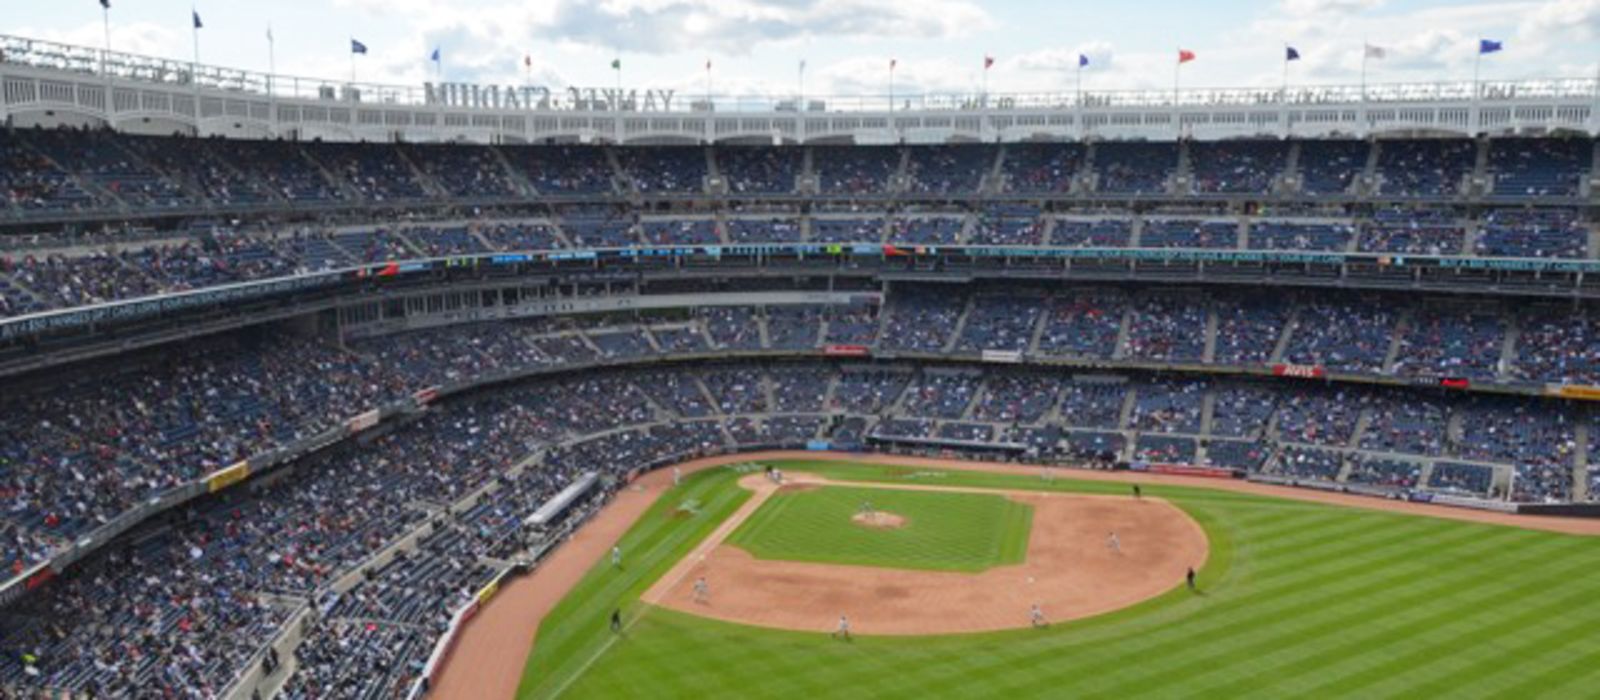 New York Yankee Stadium